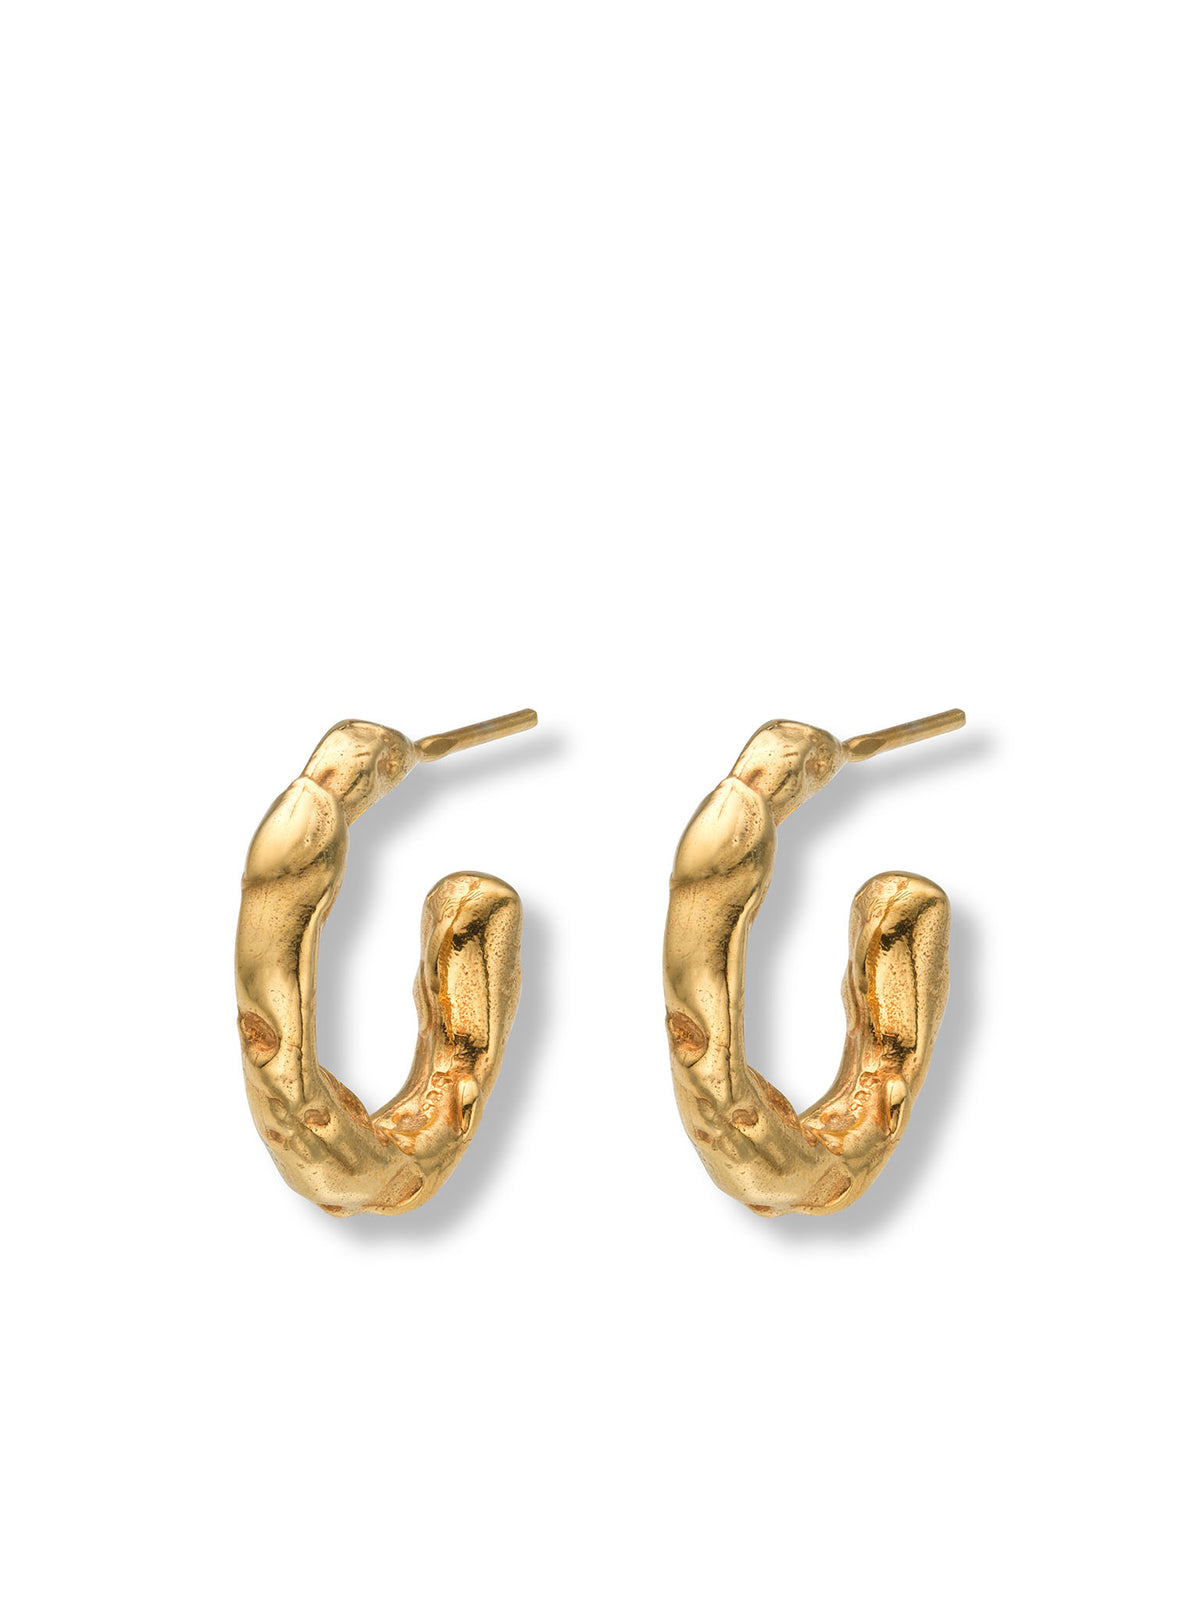 Talisman Small Hoop Earrings 14 ct Gold